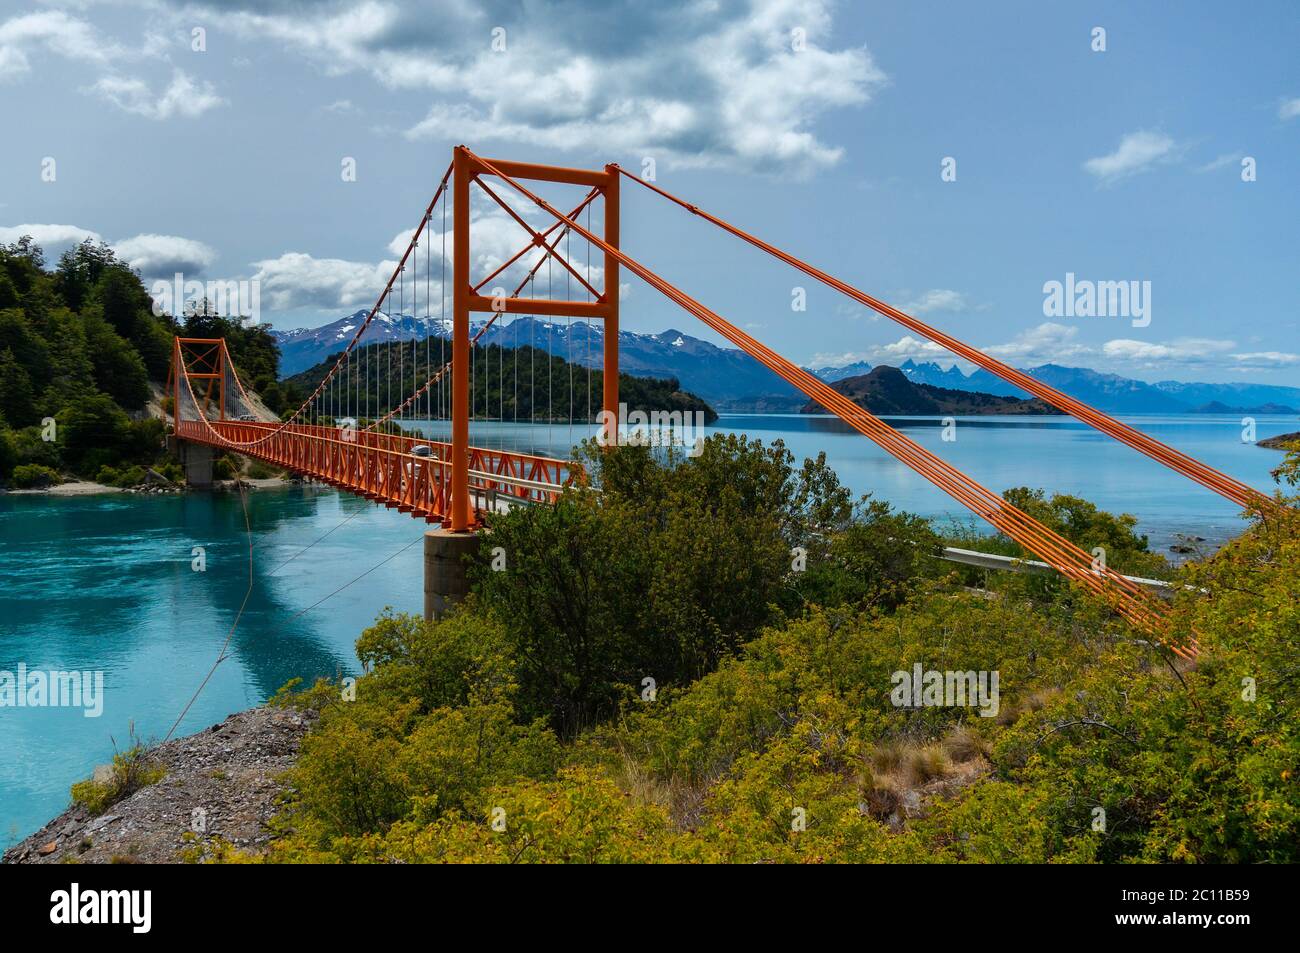 Carretera Austral ponte rosso sul lago glaciale in Patagonia Foto Stock